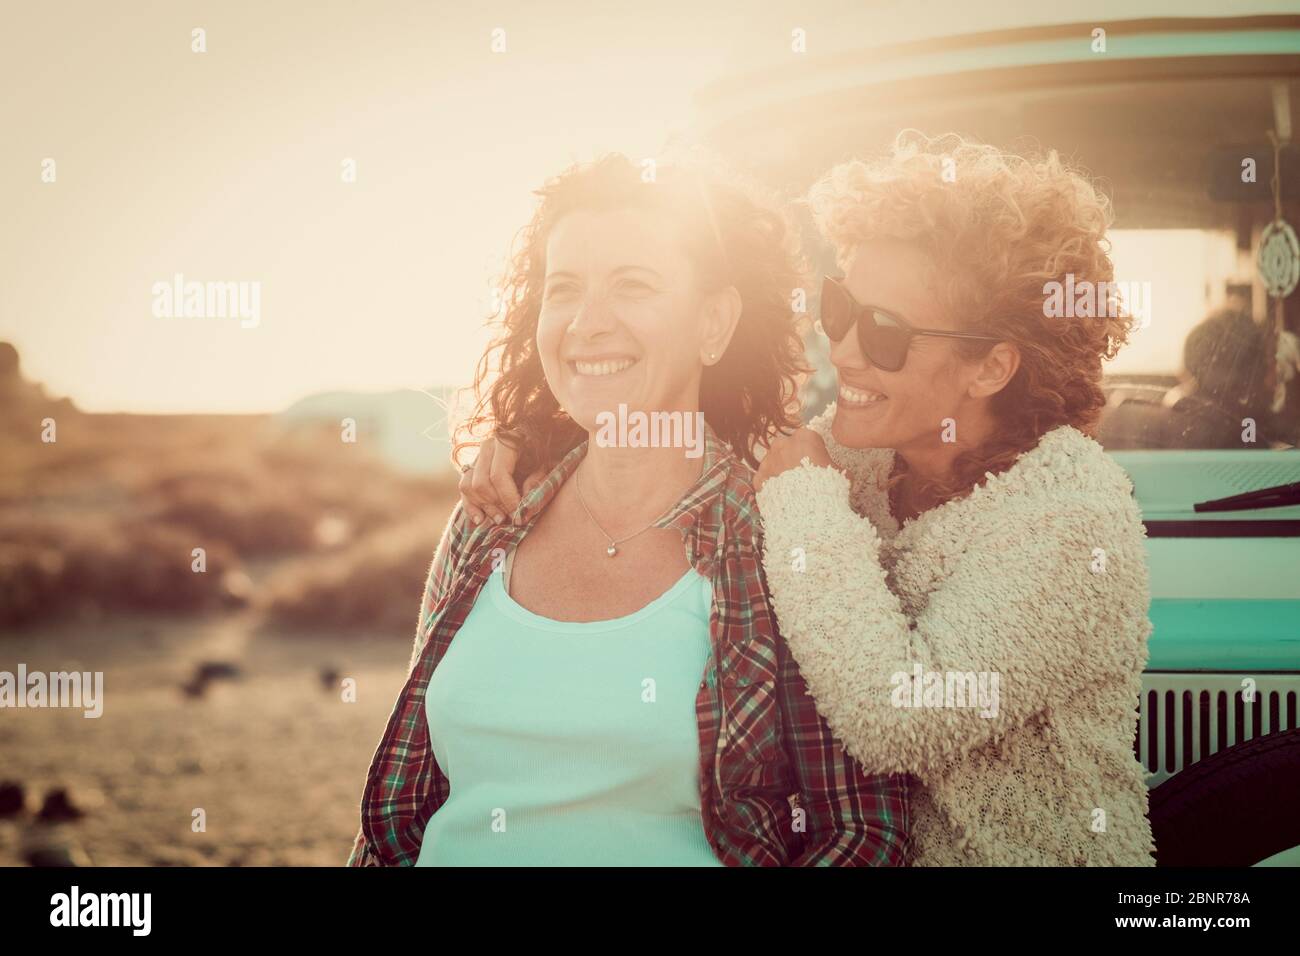 Coppia di allegre donne felici amici adulti godersi insieme l'attività di svago all'aperto divertendosi e sorridendo - van vintage blu in background per concetto di viaggio - retroilluminazione del tramonto Foto Stock